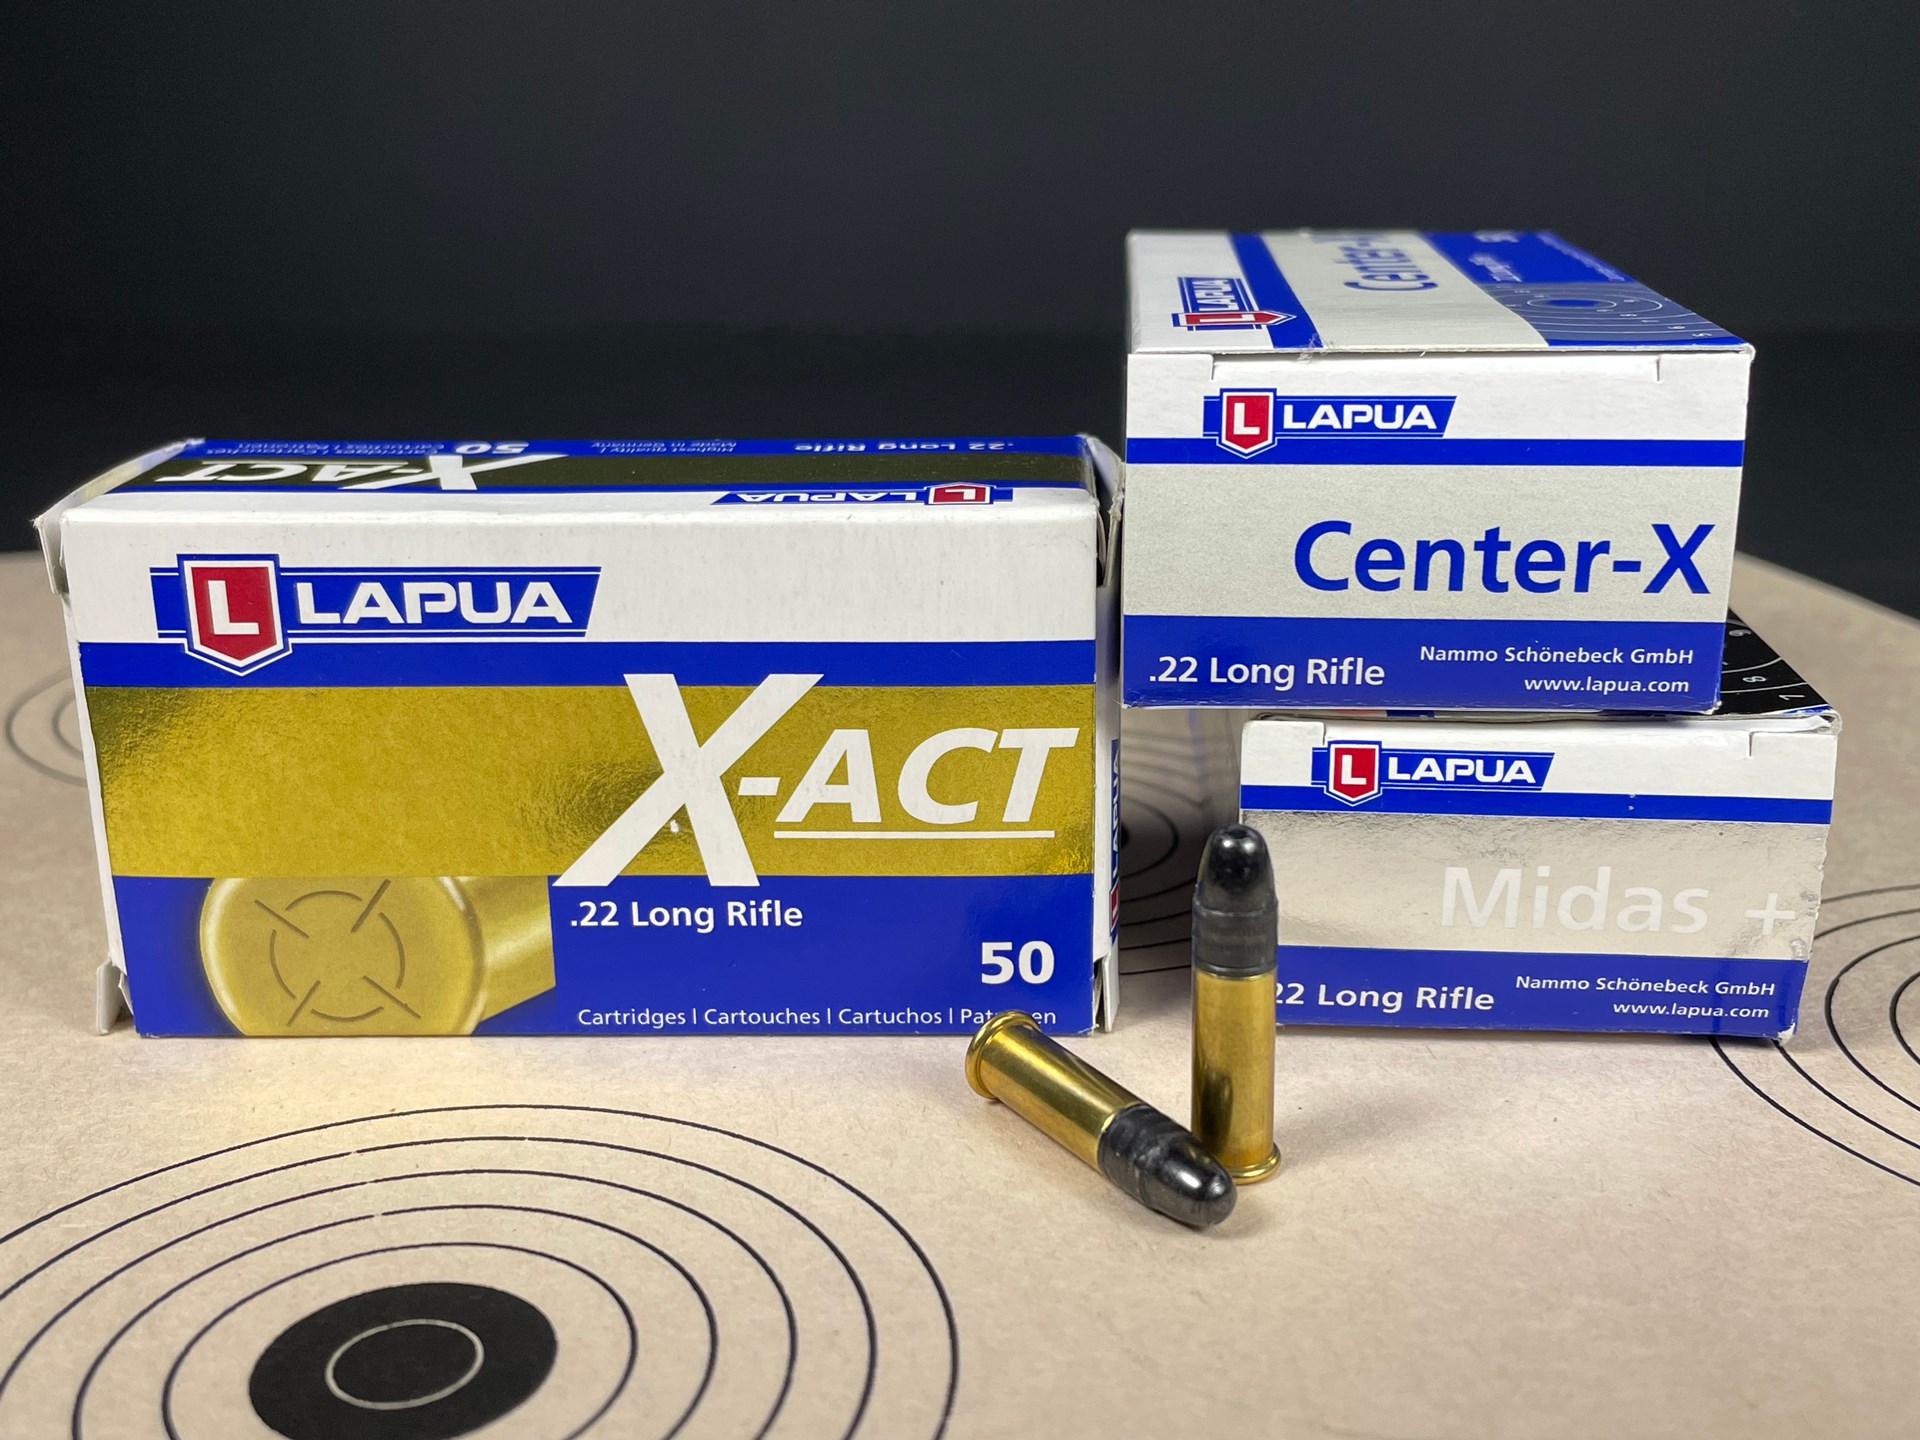 Lapua ammunition .22 LR ammo bullseye targets boxes stacked